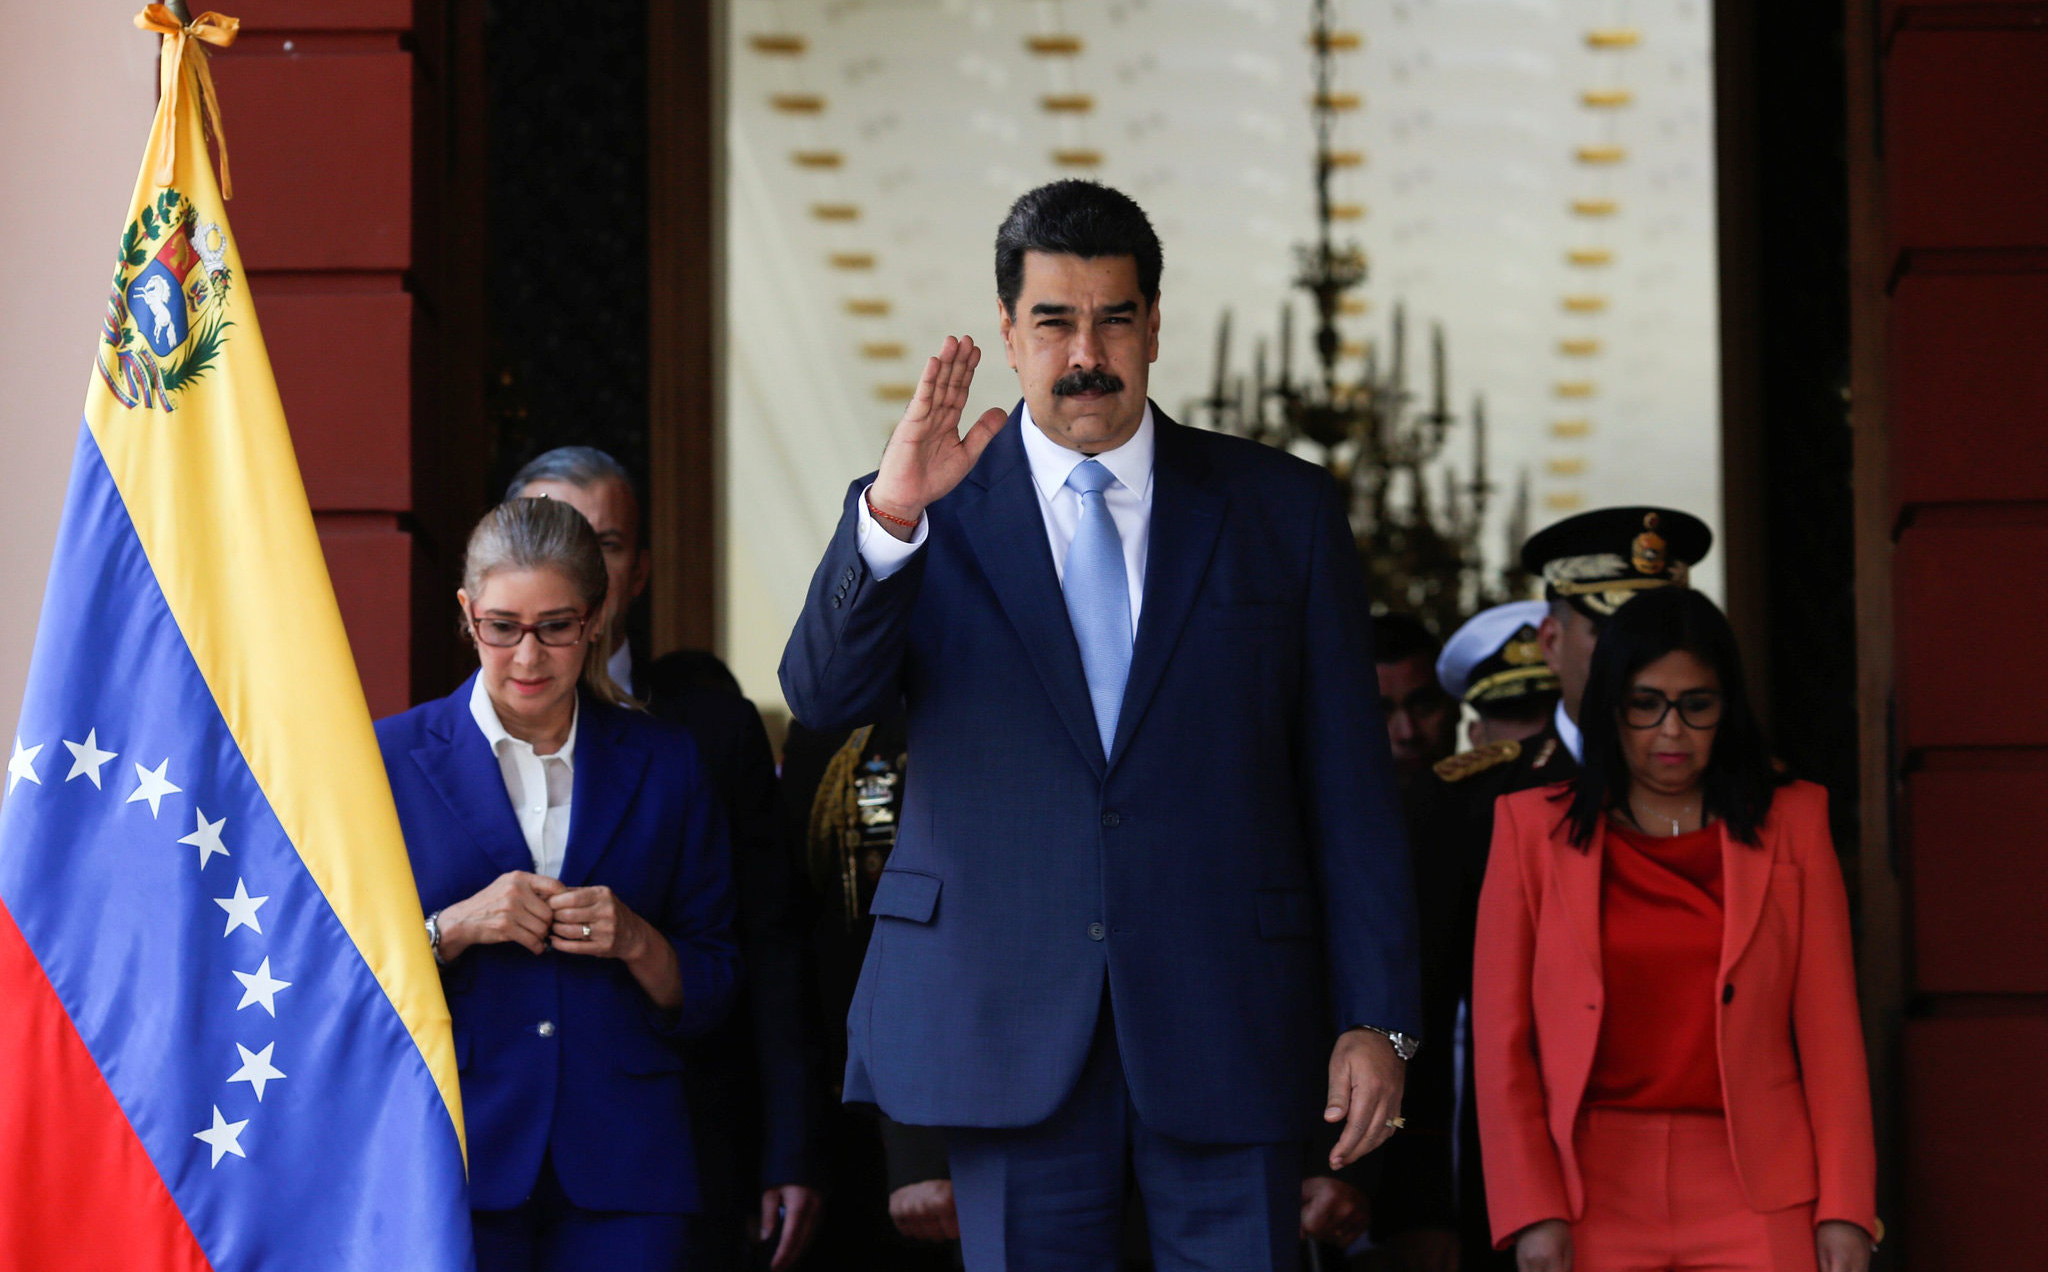 Tòa án Anh công nhận Juan Guaidó, từ chối trả kho vàng cho chính phủ tổng thống Venezuela Maduro